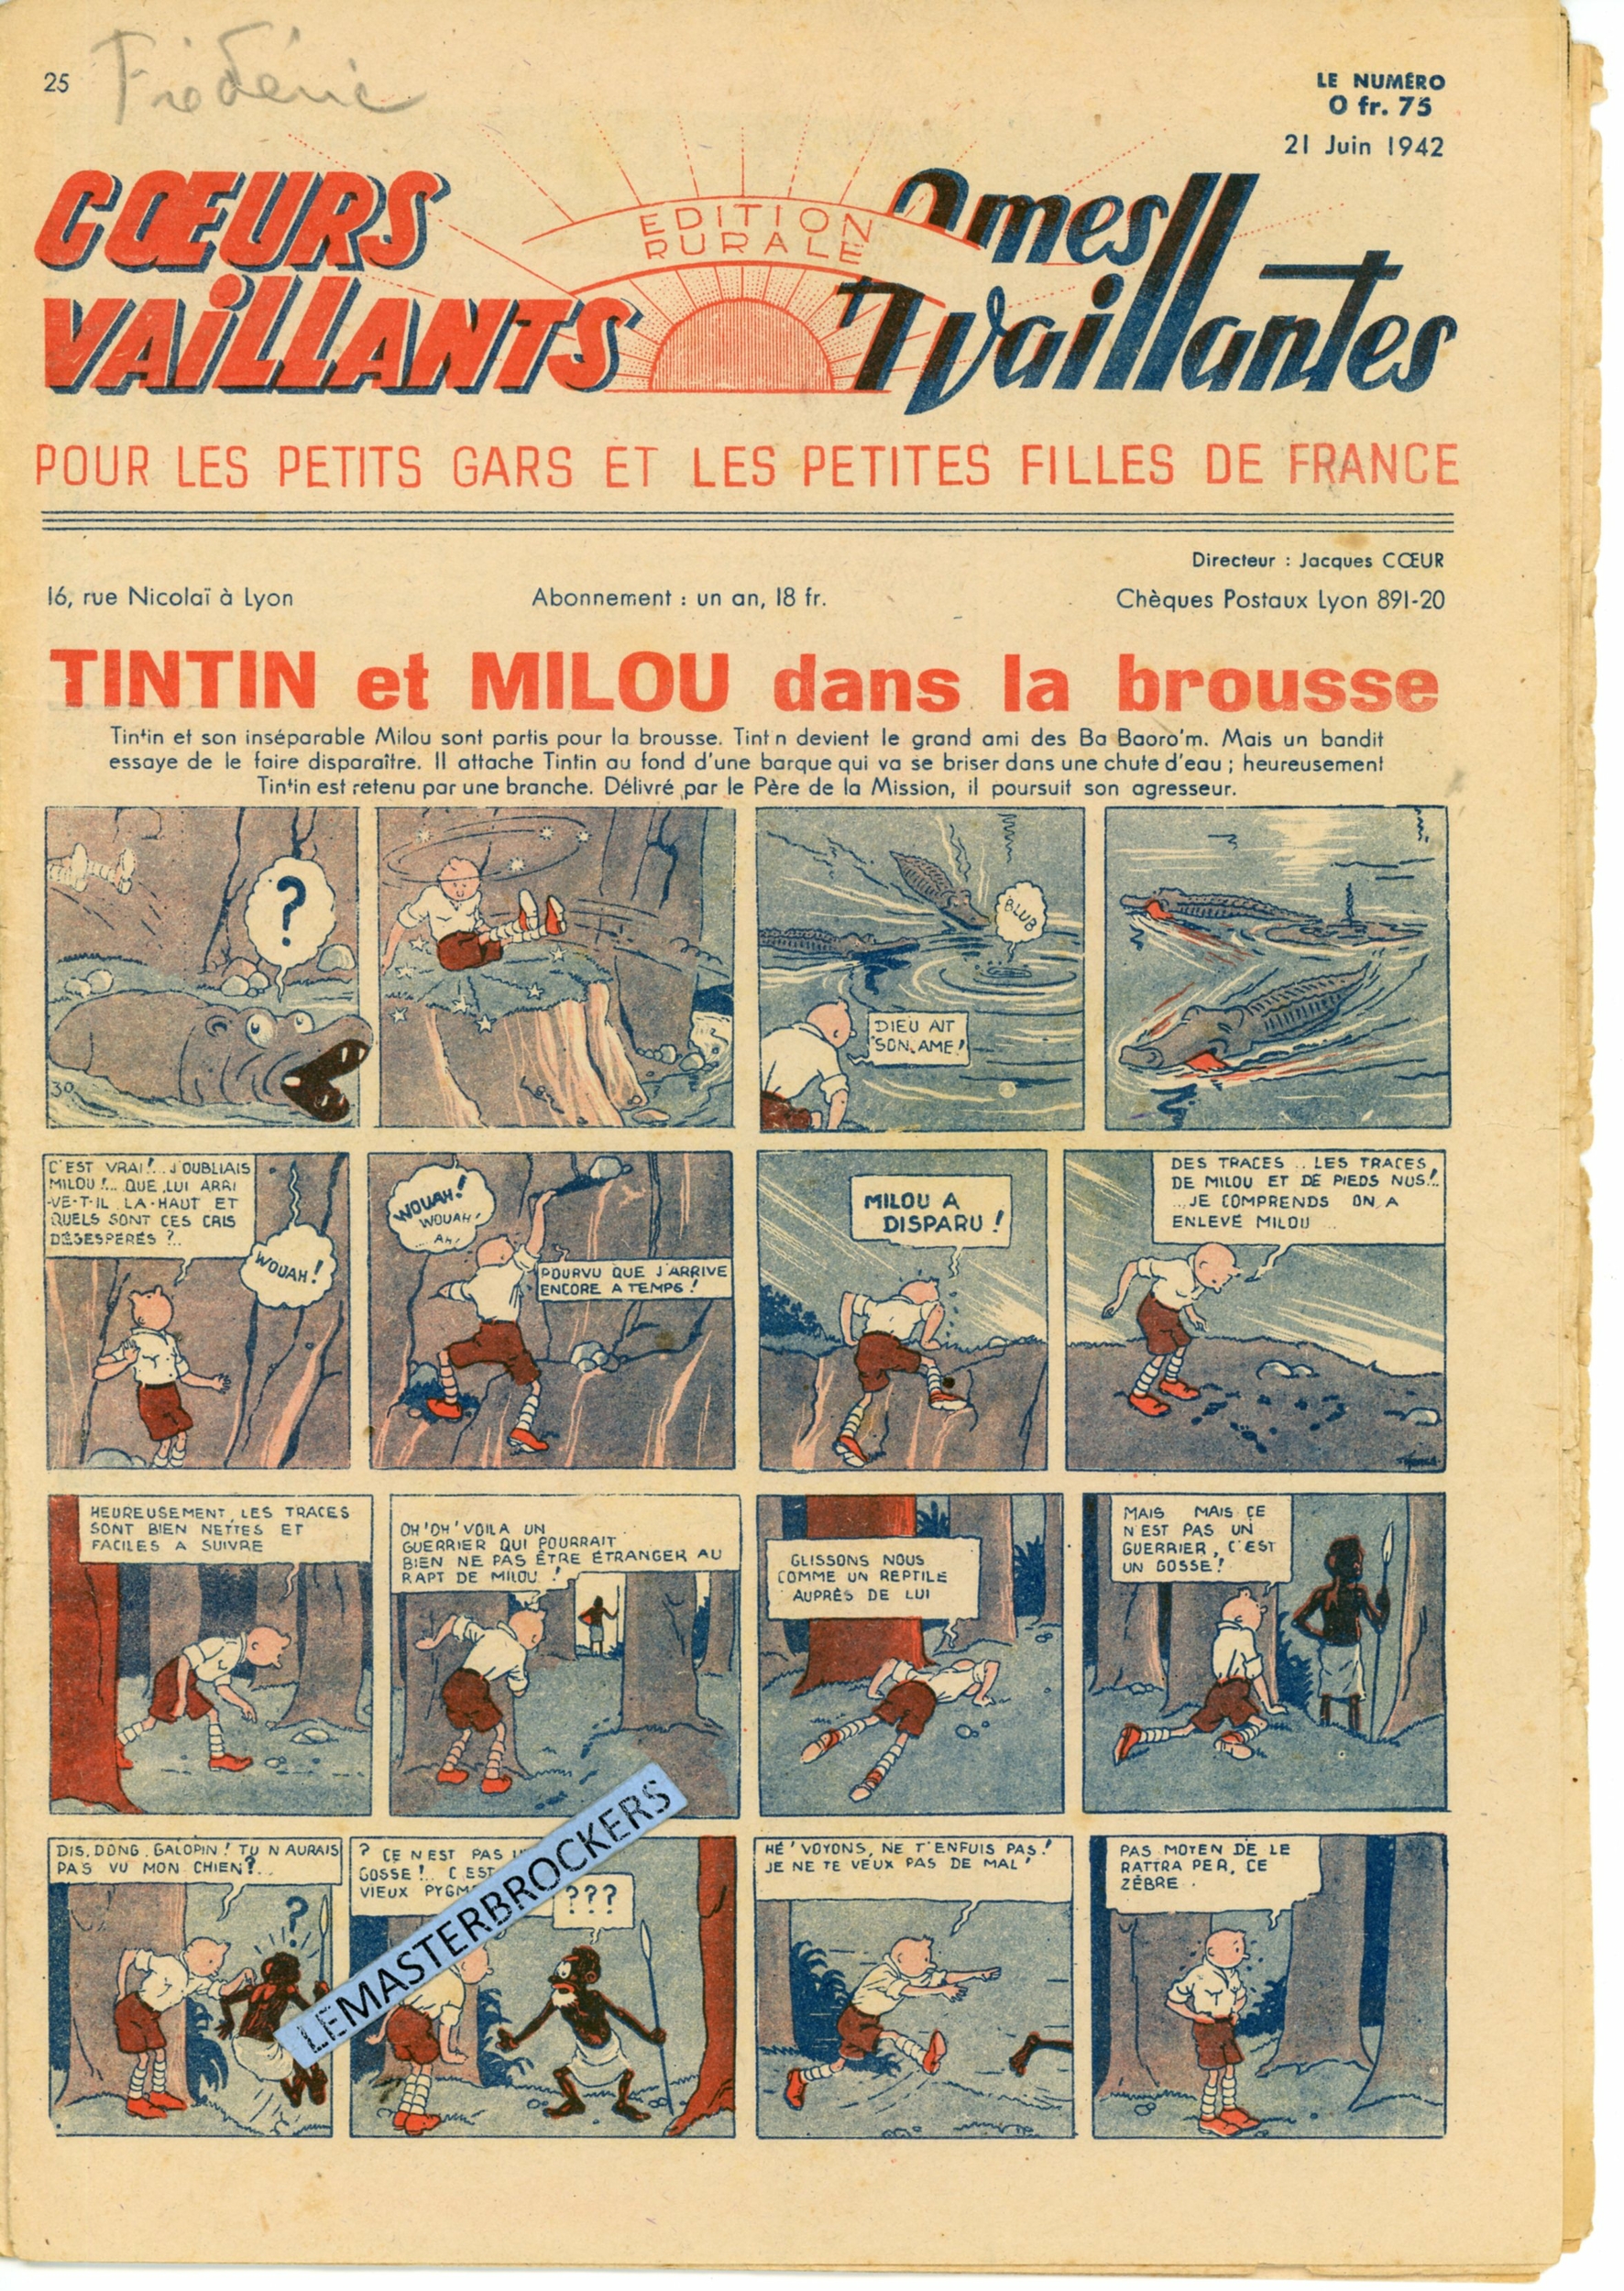 TINTIN ET MILOU DANS LA BROUSSE 1942 COEURS VAILLANTS 25  LEMASTERBROCKERS